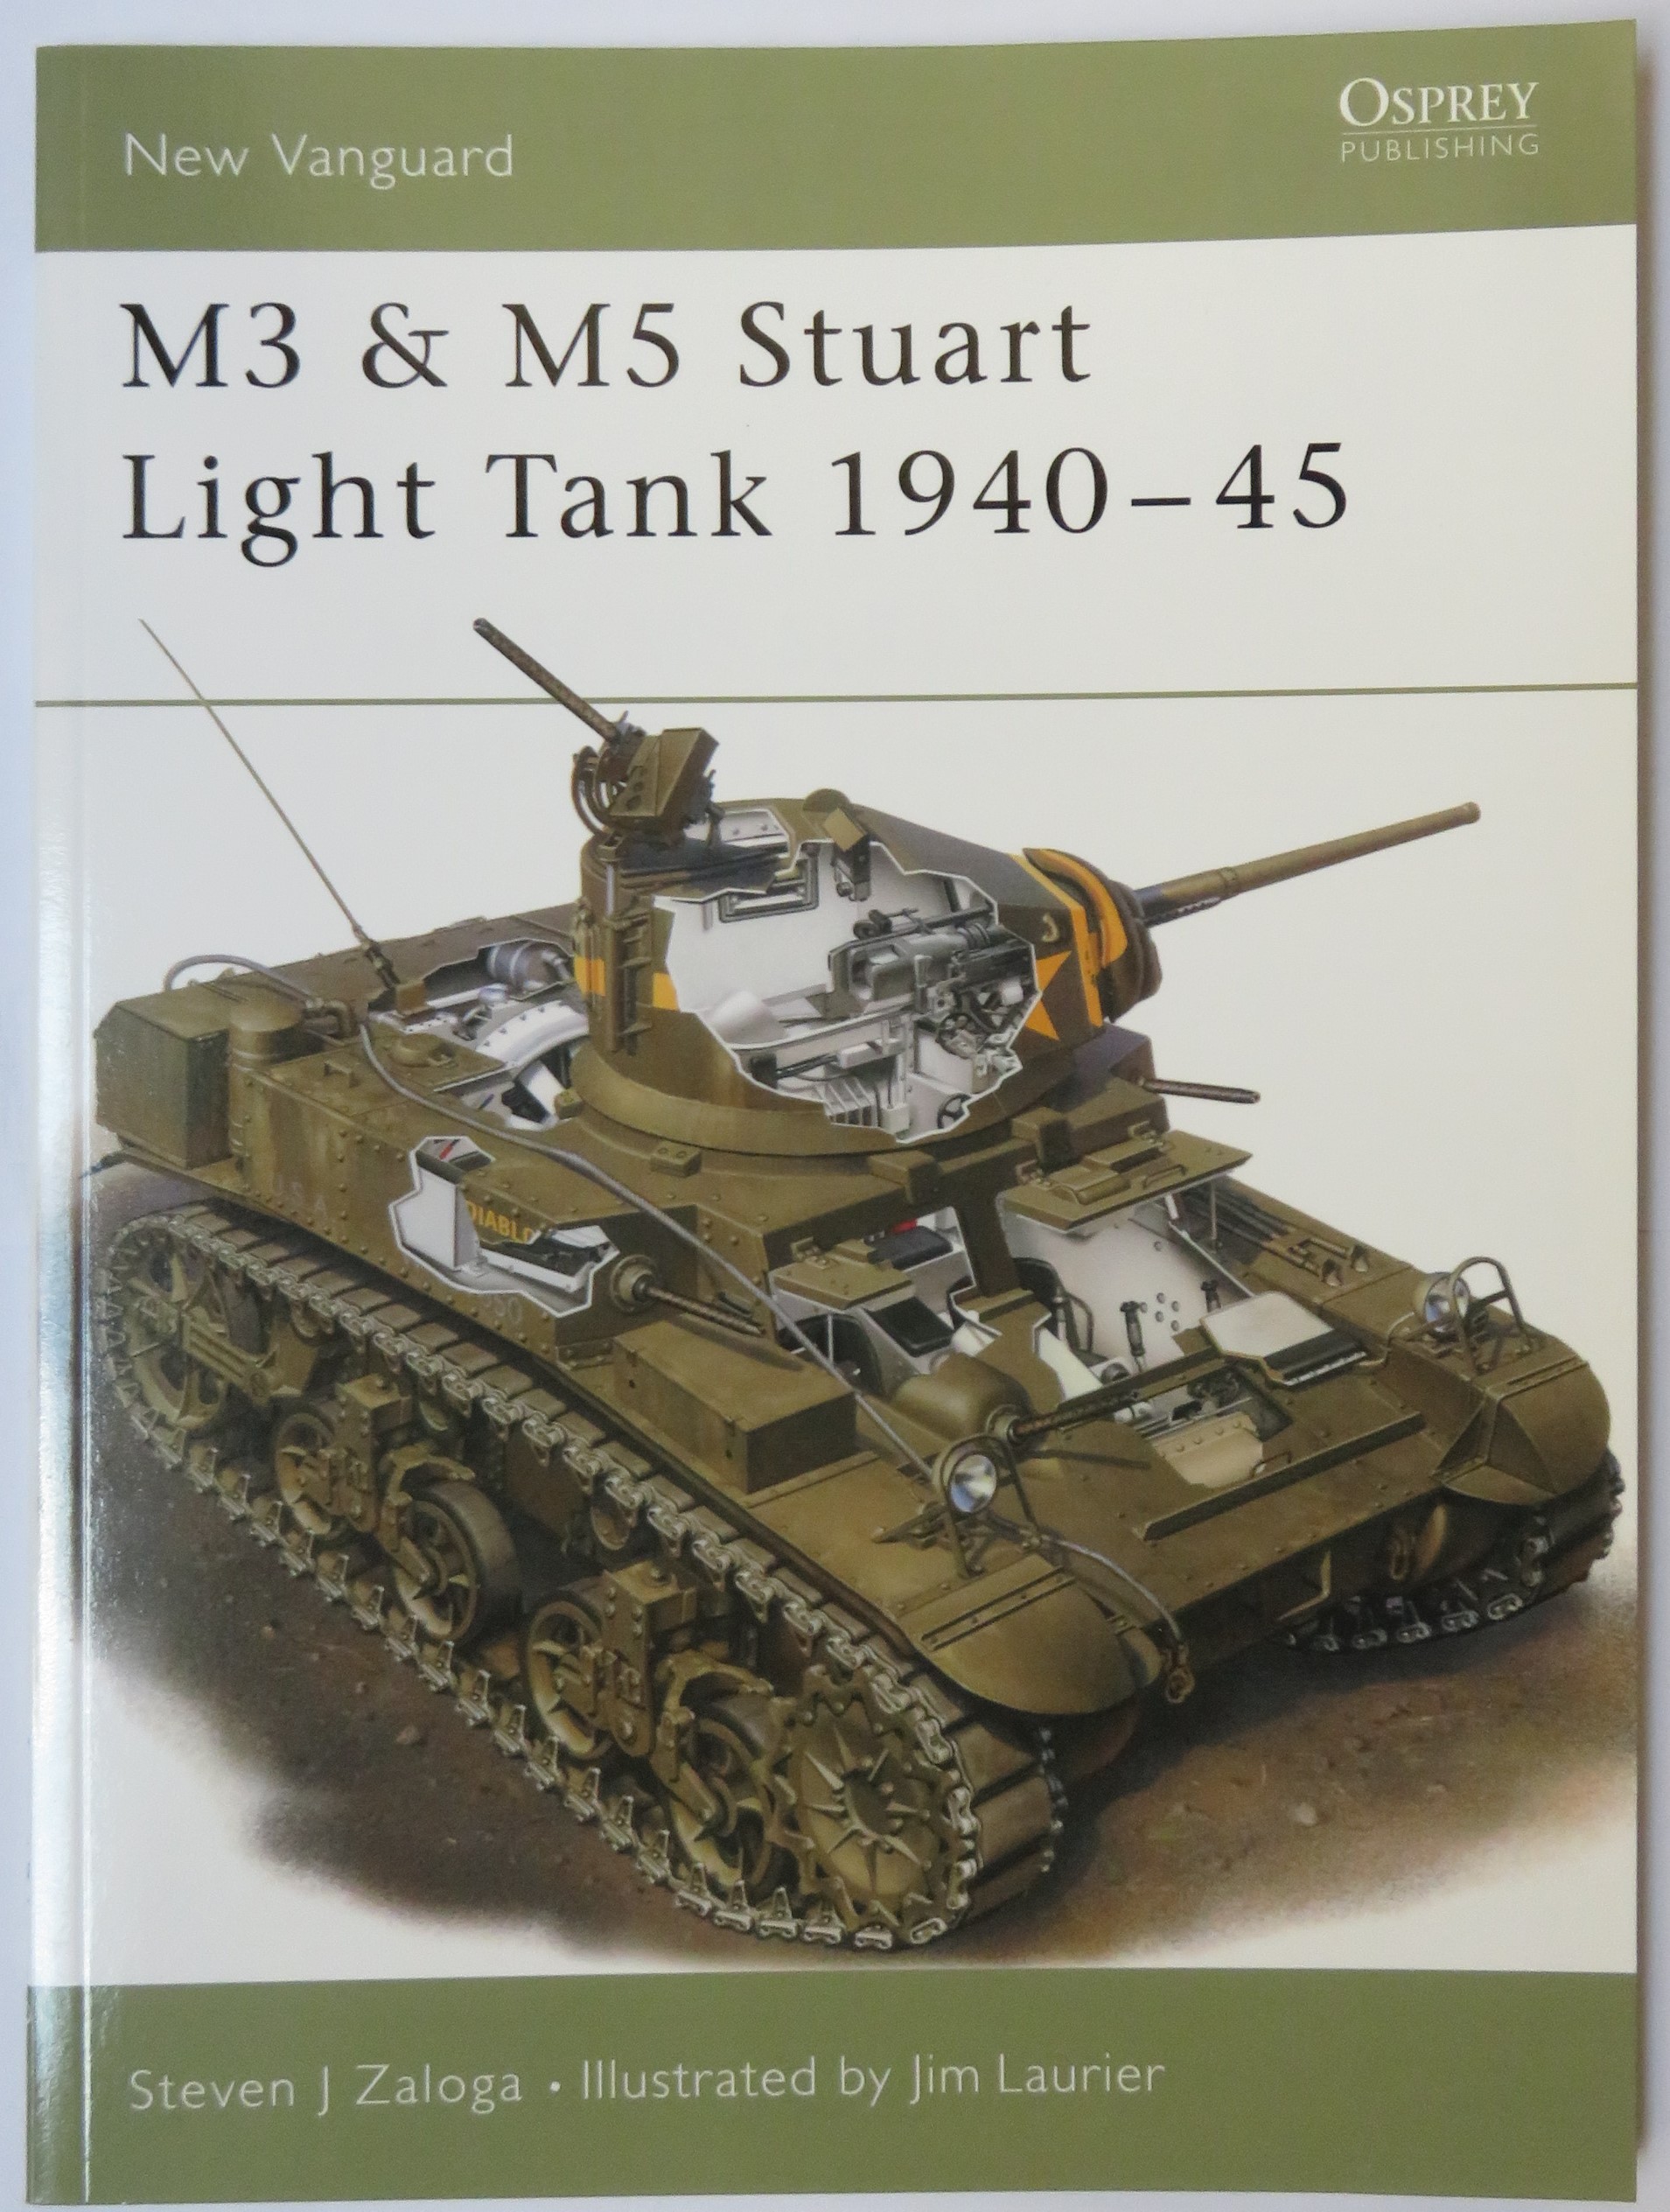 New Vanguard 33 M3 & M5 Stuart Light Tank 1940-45